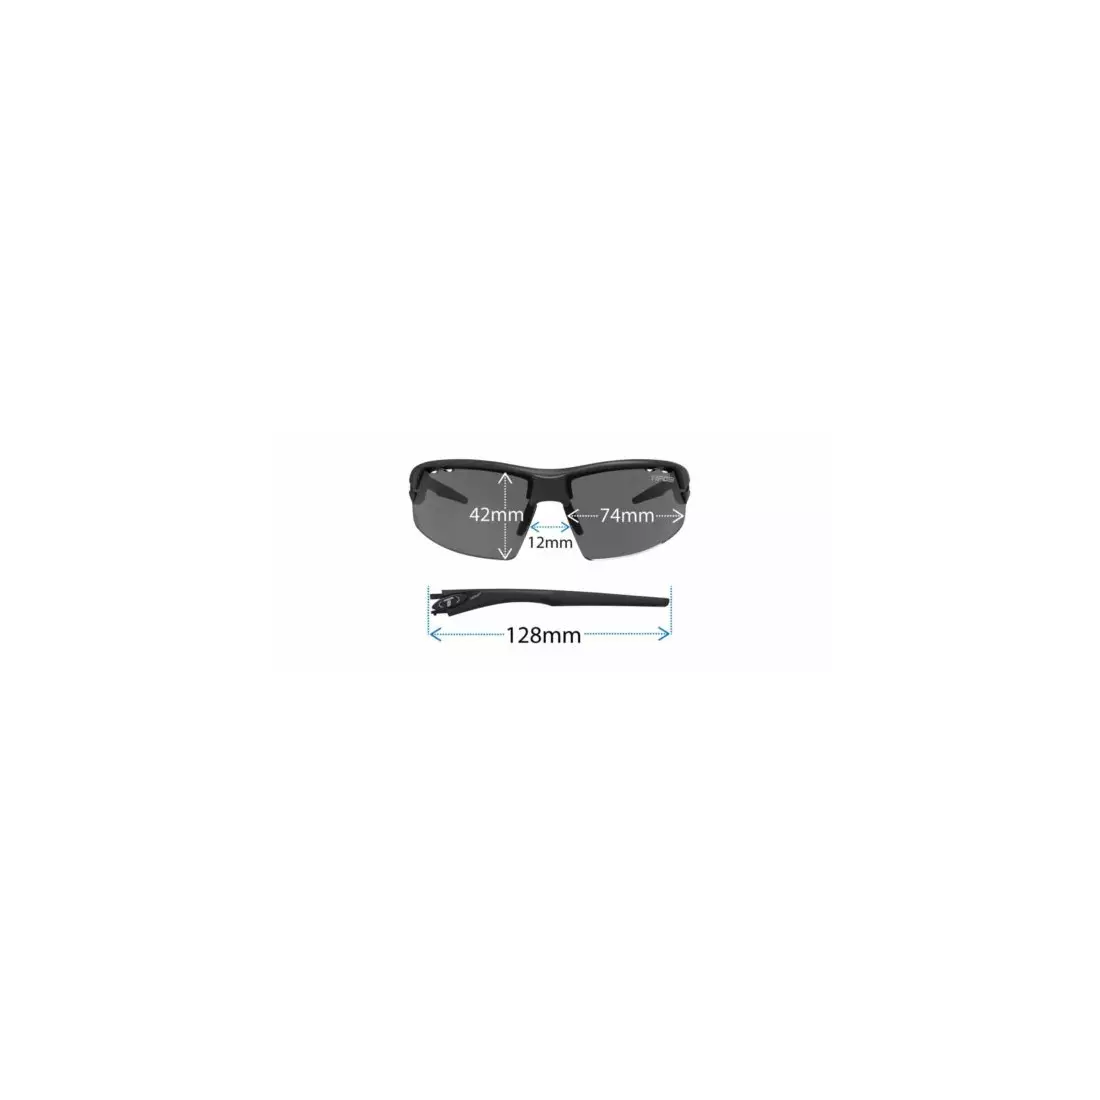 TIFOSI Sportbrillen mit austauschbaren Gläsern crit matte black (Smoke, AC Red, Clear) TFI-1340100101